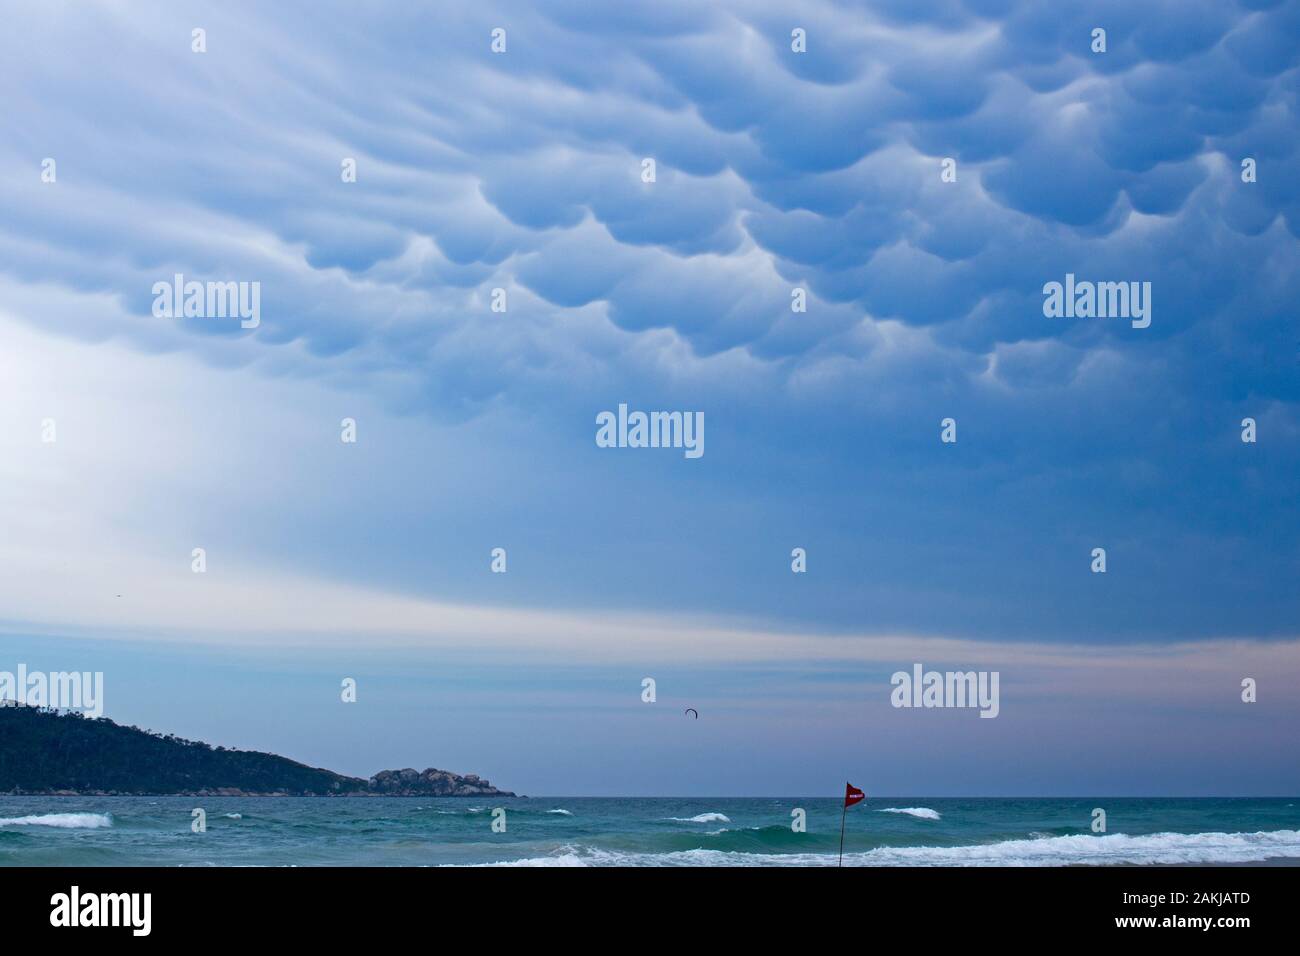 Strana formazione di nubi sul mare su una spiaggia di Santa Catarina. Uno spettacolare paesaggio nuvoloso. Foto Stock